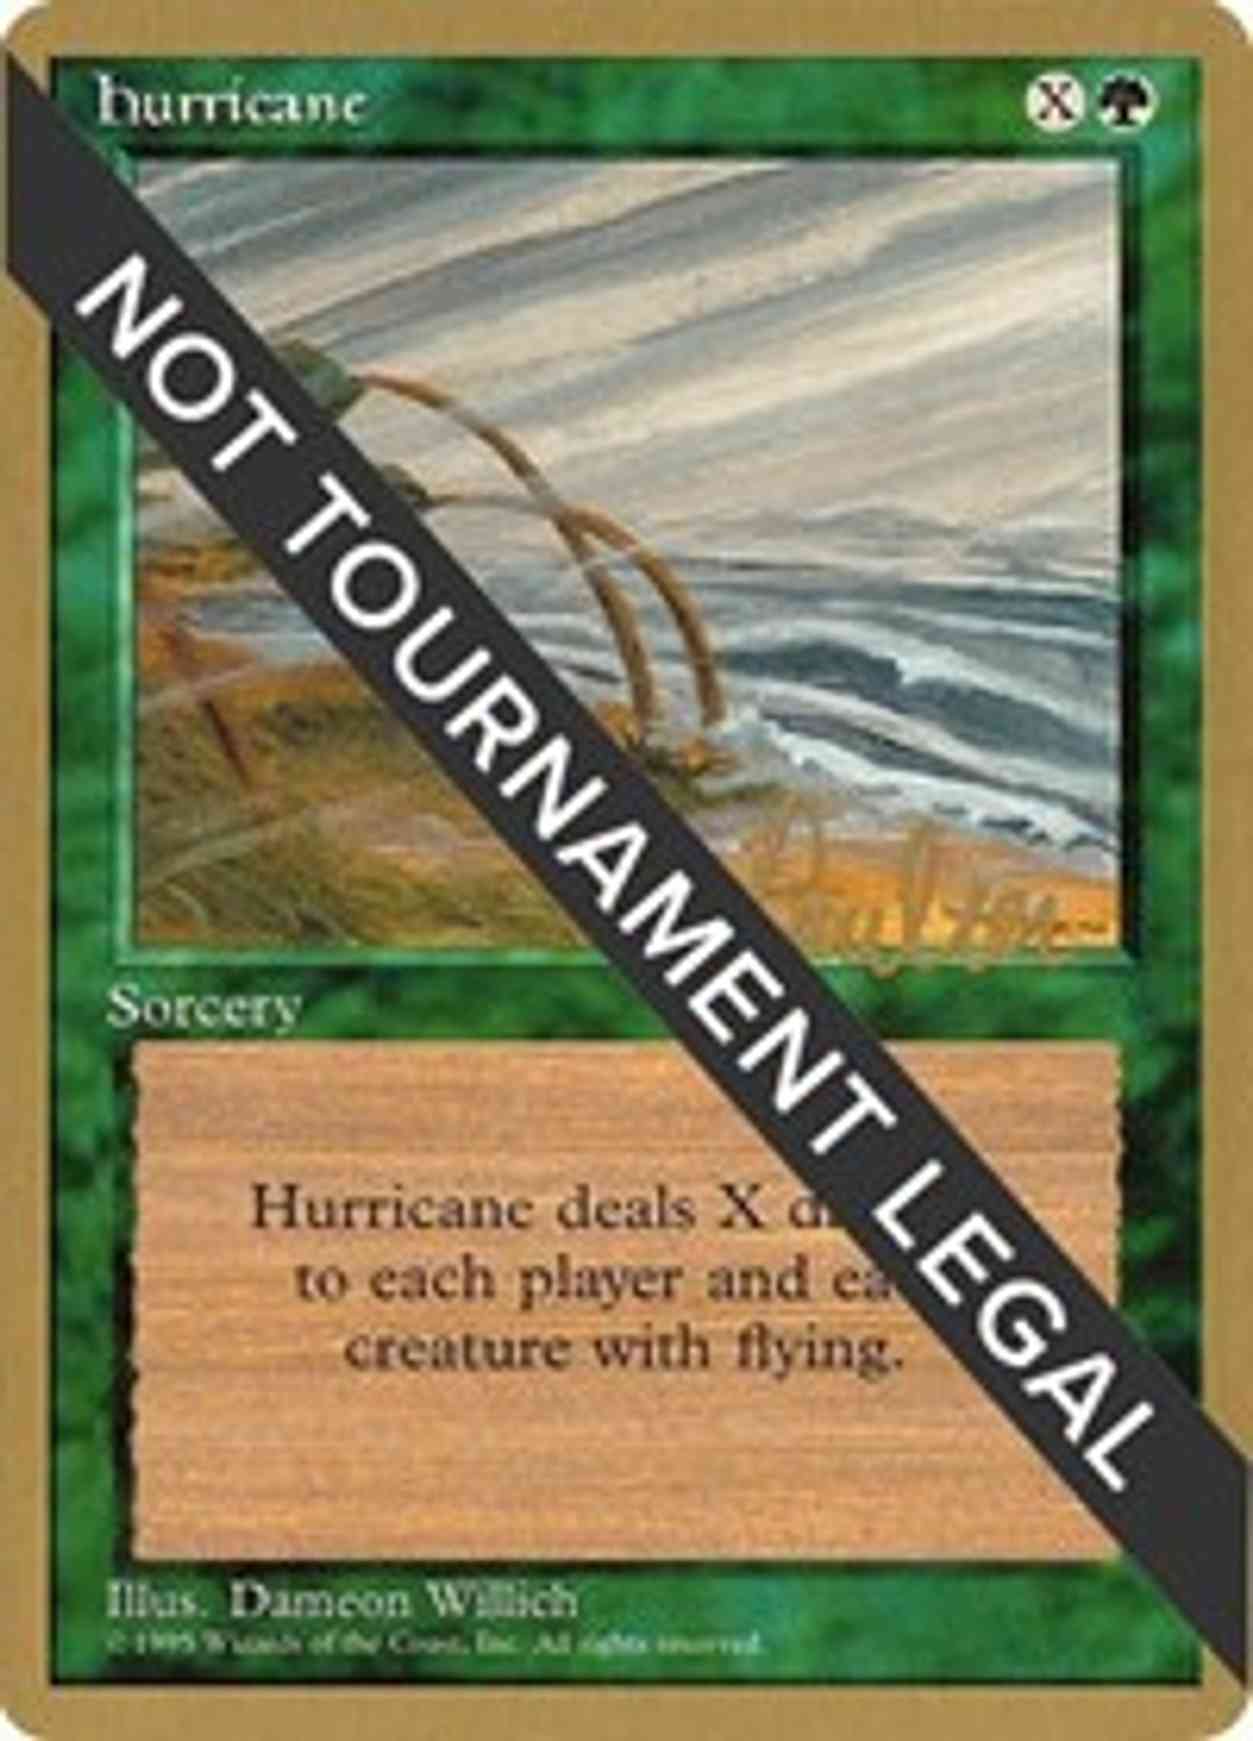 Hurricane - 1996 Preston Poulter (4ED) magic card front